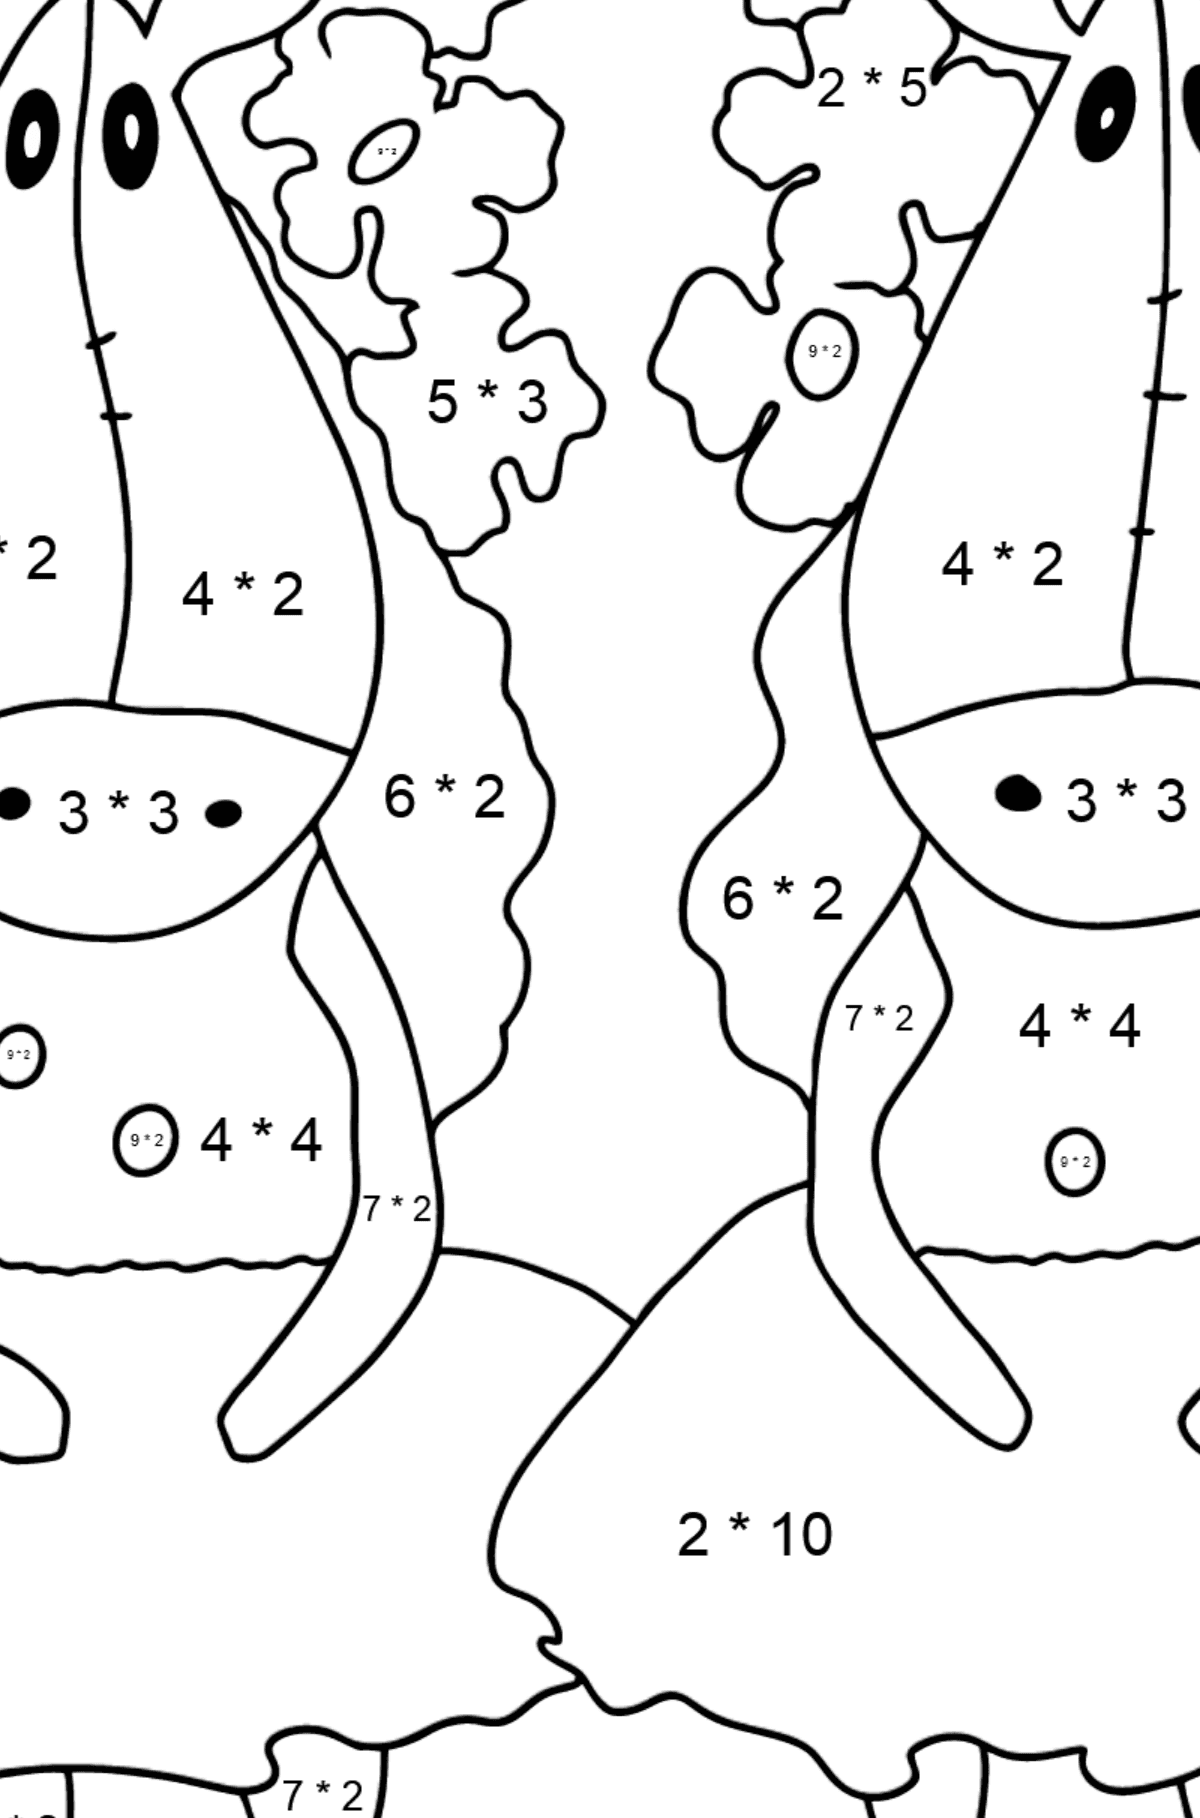 Desenho de cavalos mágicos para colorir - Colorindo com Matemática - Multiplicação para Crianças